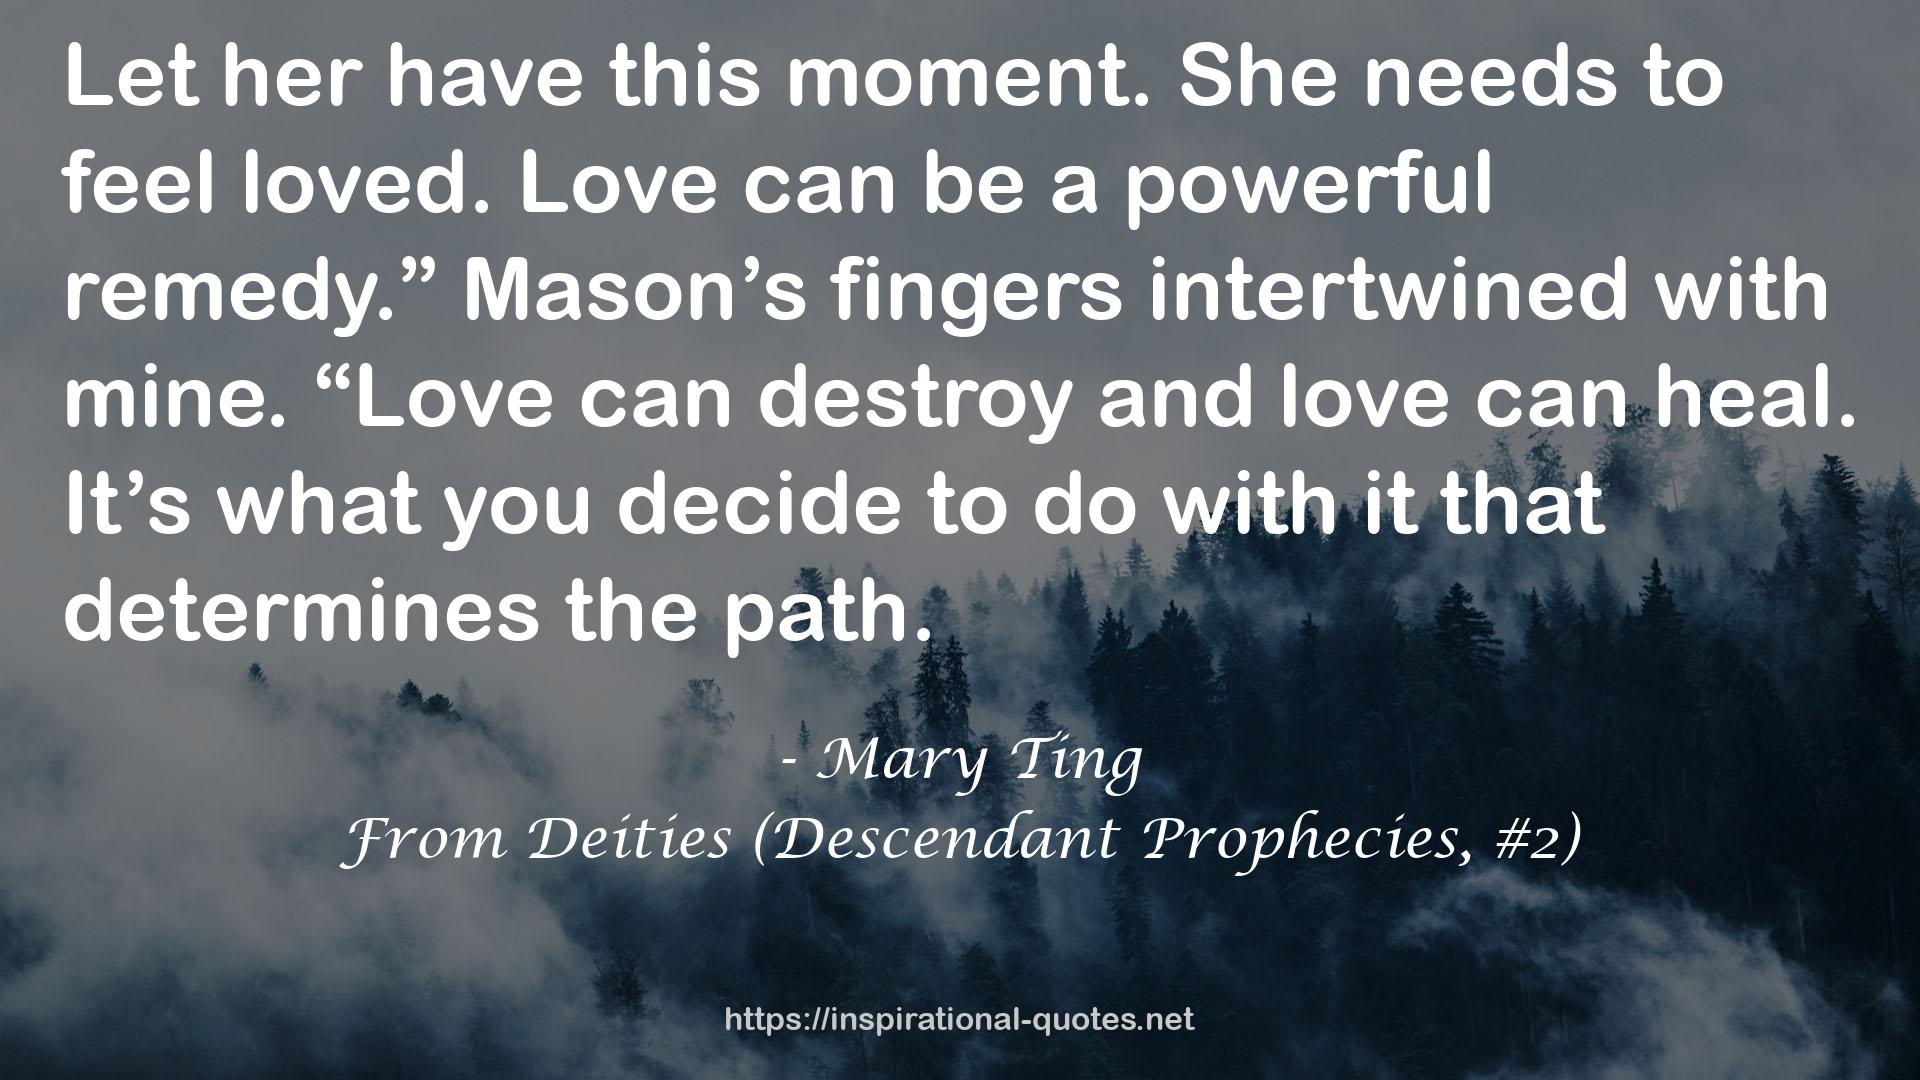 From Deities (Descendant Prophecies, #2) QUOTES